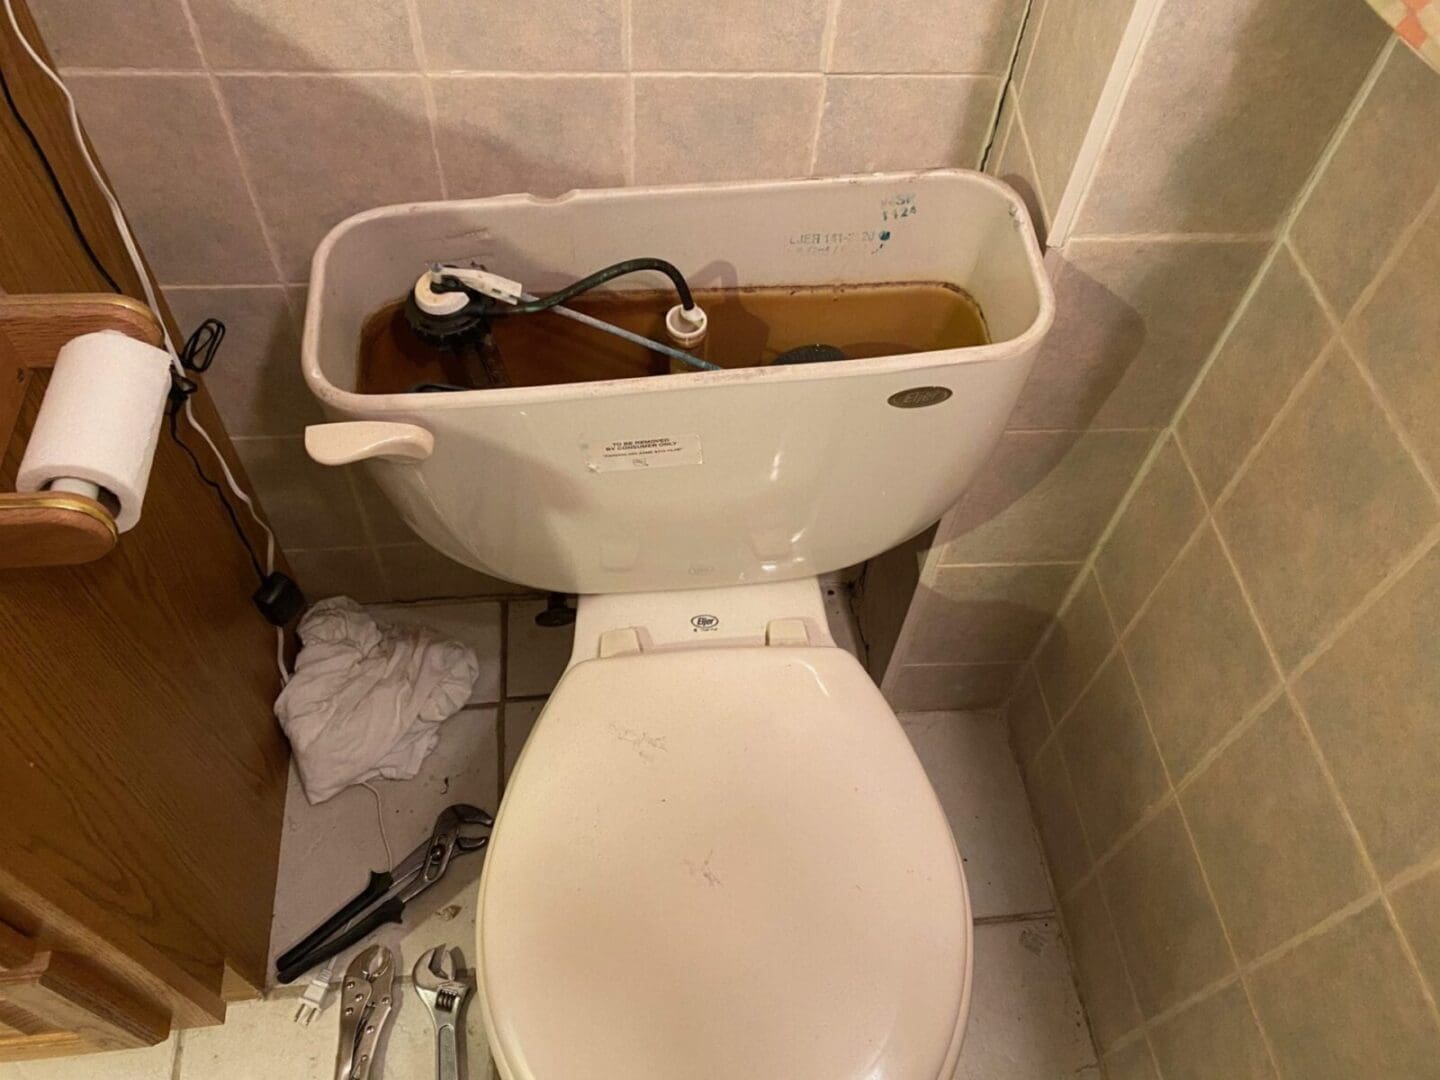 A toilet in a bathroom with a broken handle.